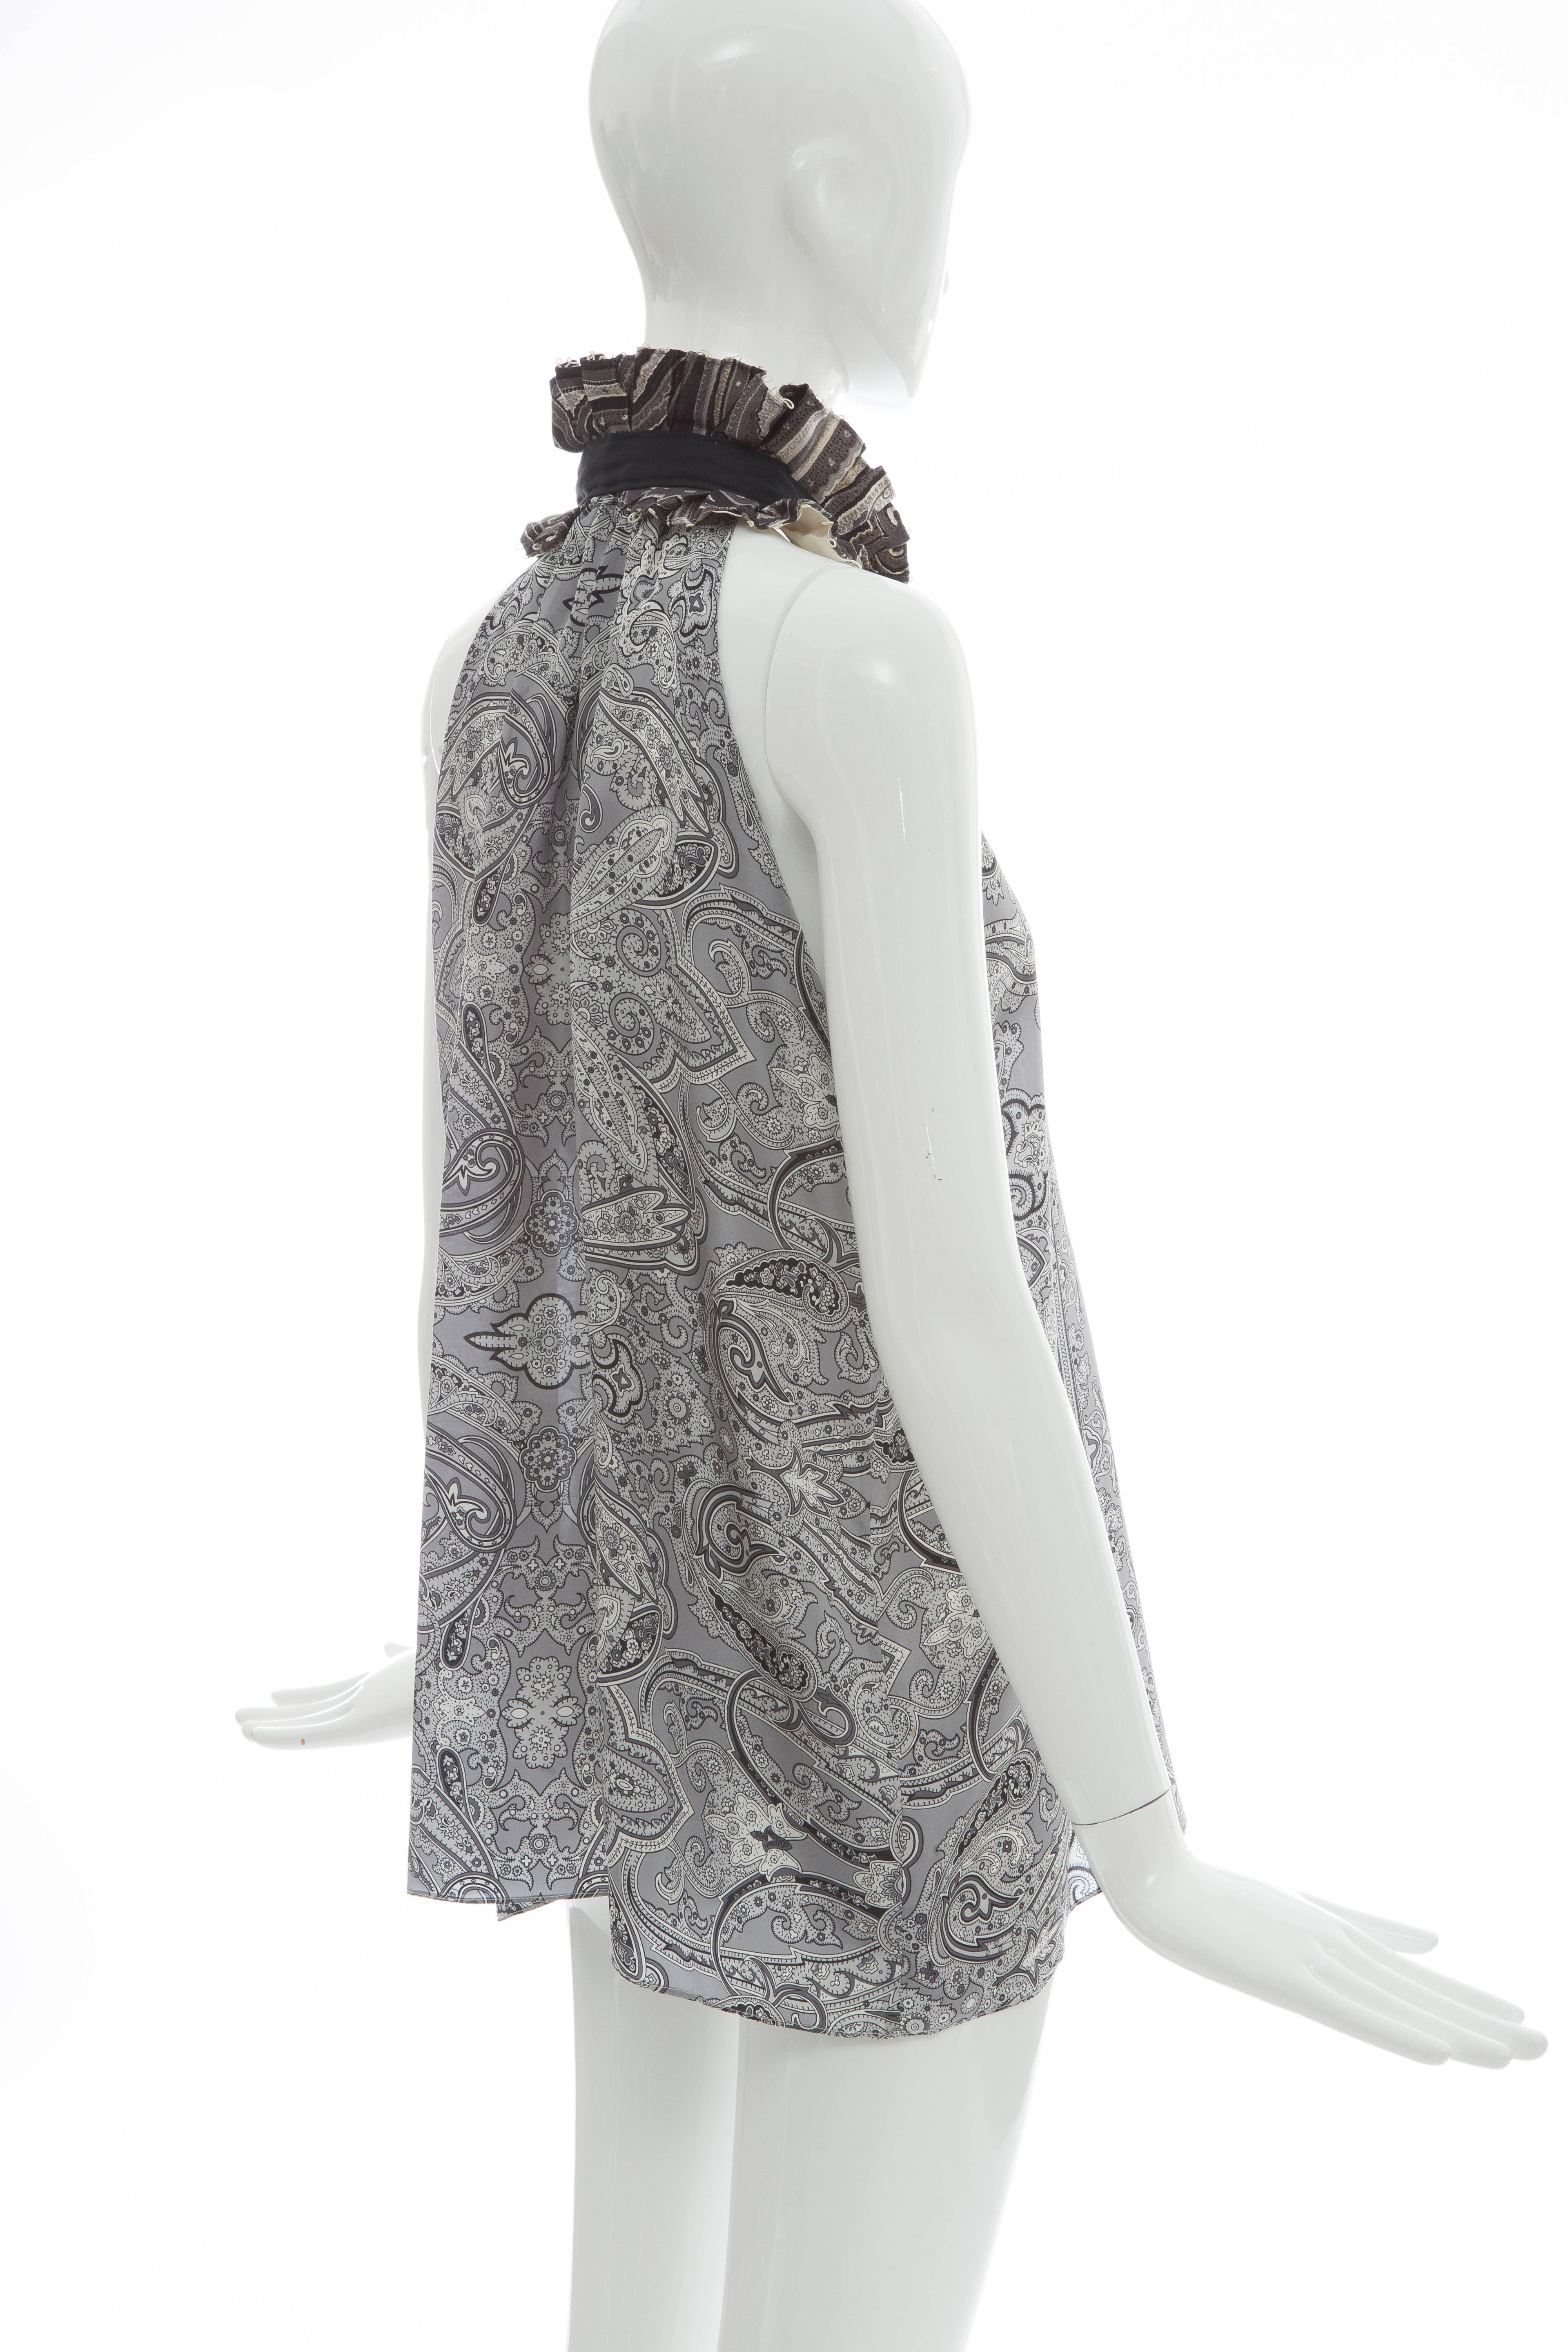 Nicolas Ghesquière for Balenciaga Silk Blouse With Pleated Collar, Spring 2006 2